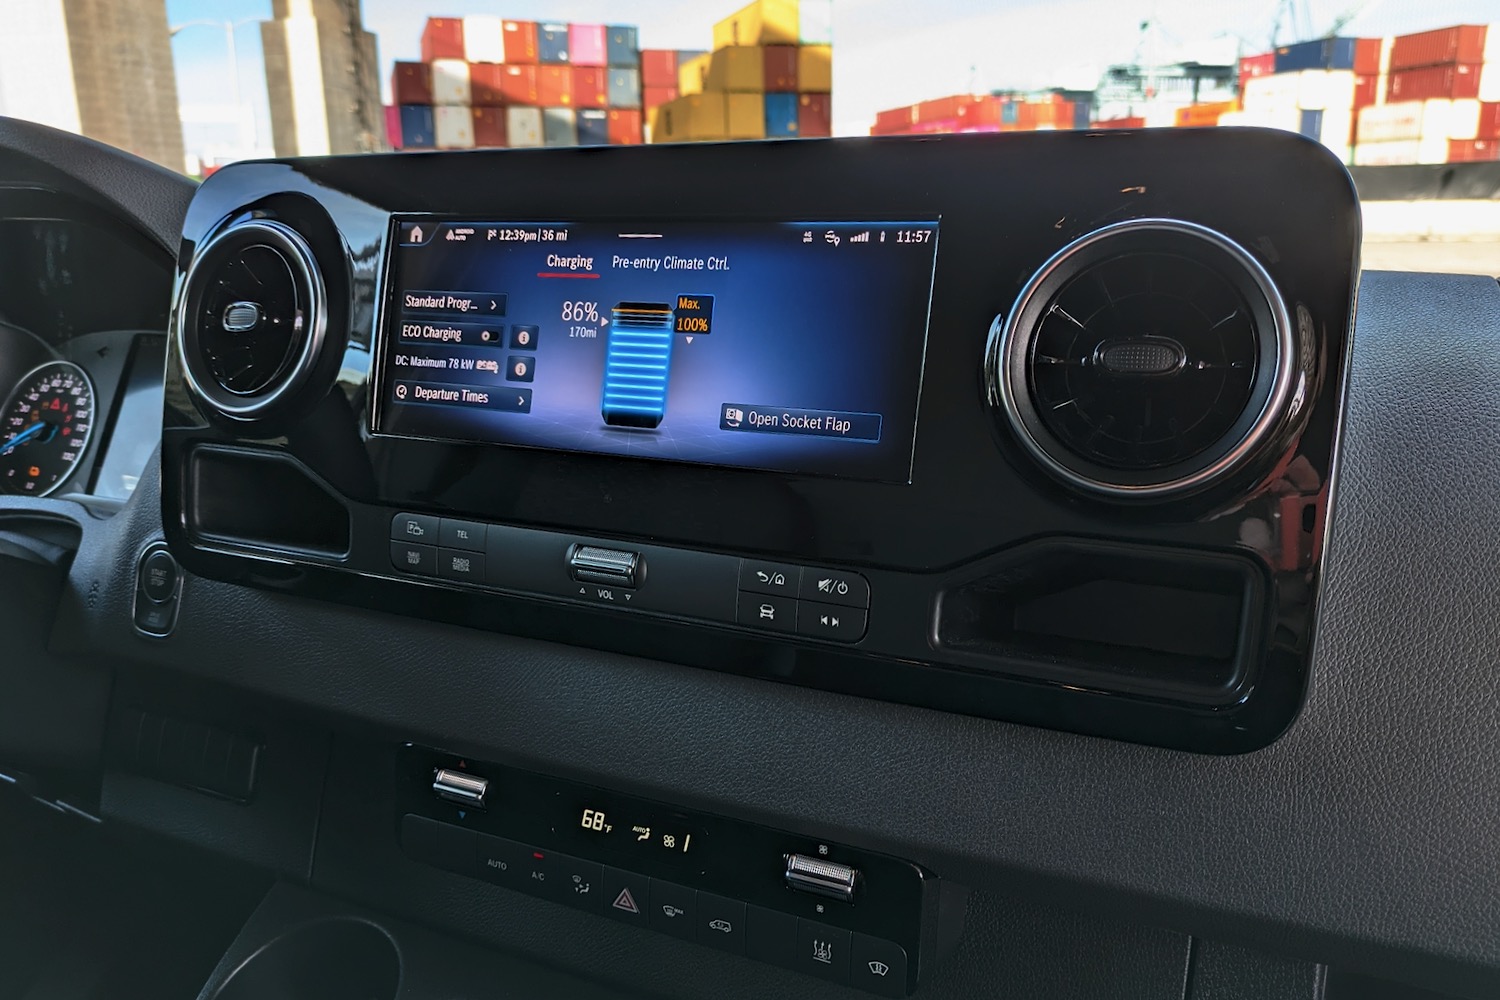 Mercedes-Benz eSprinter touchscreen showing battery information.